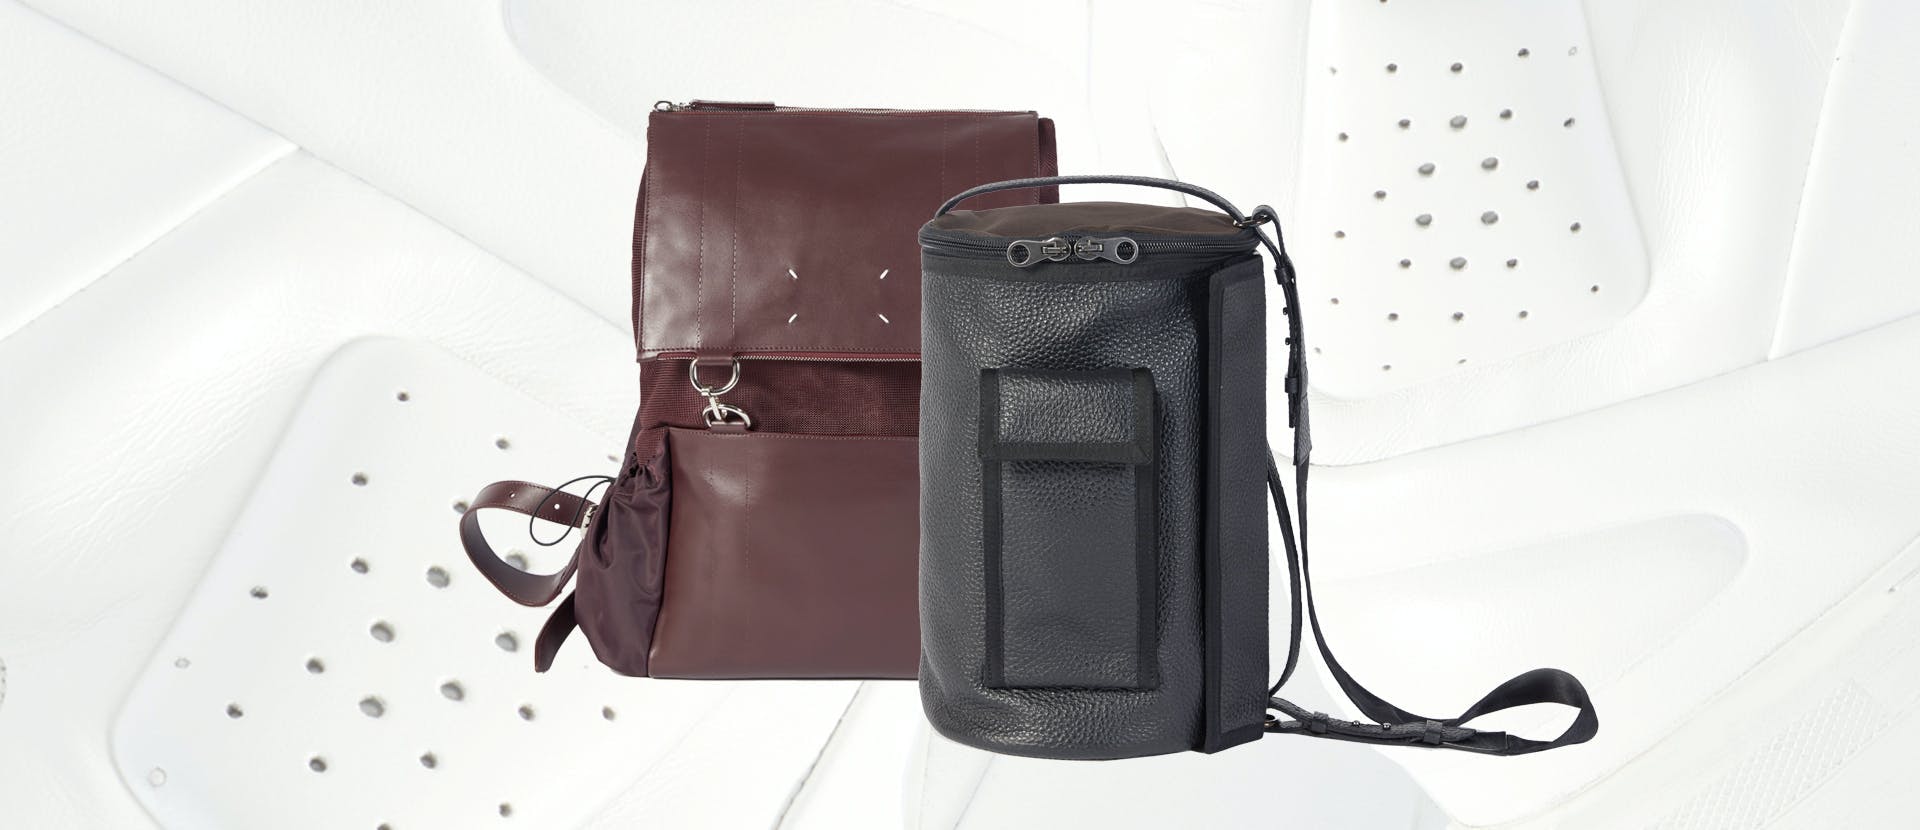 accessories accessory bag handbag